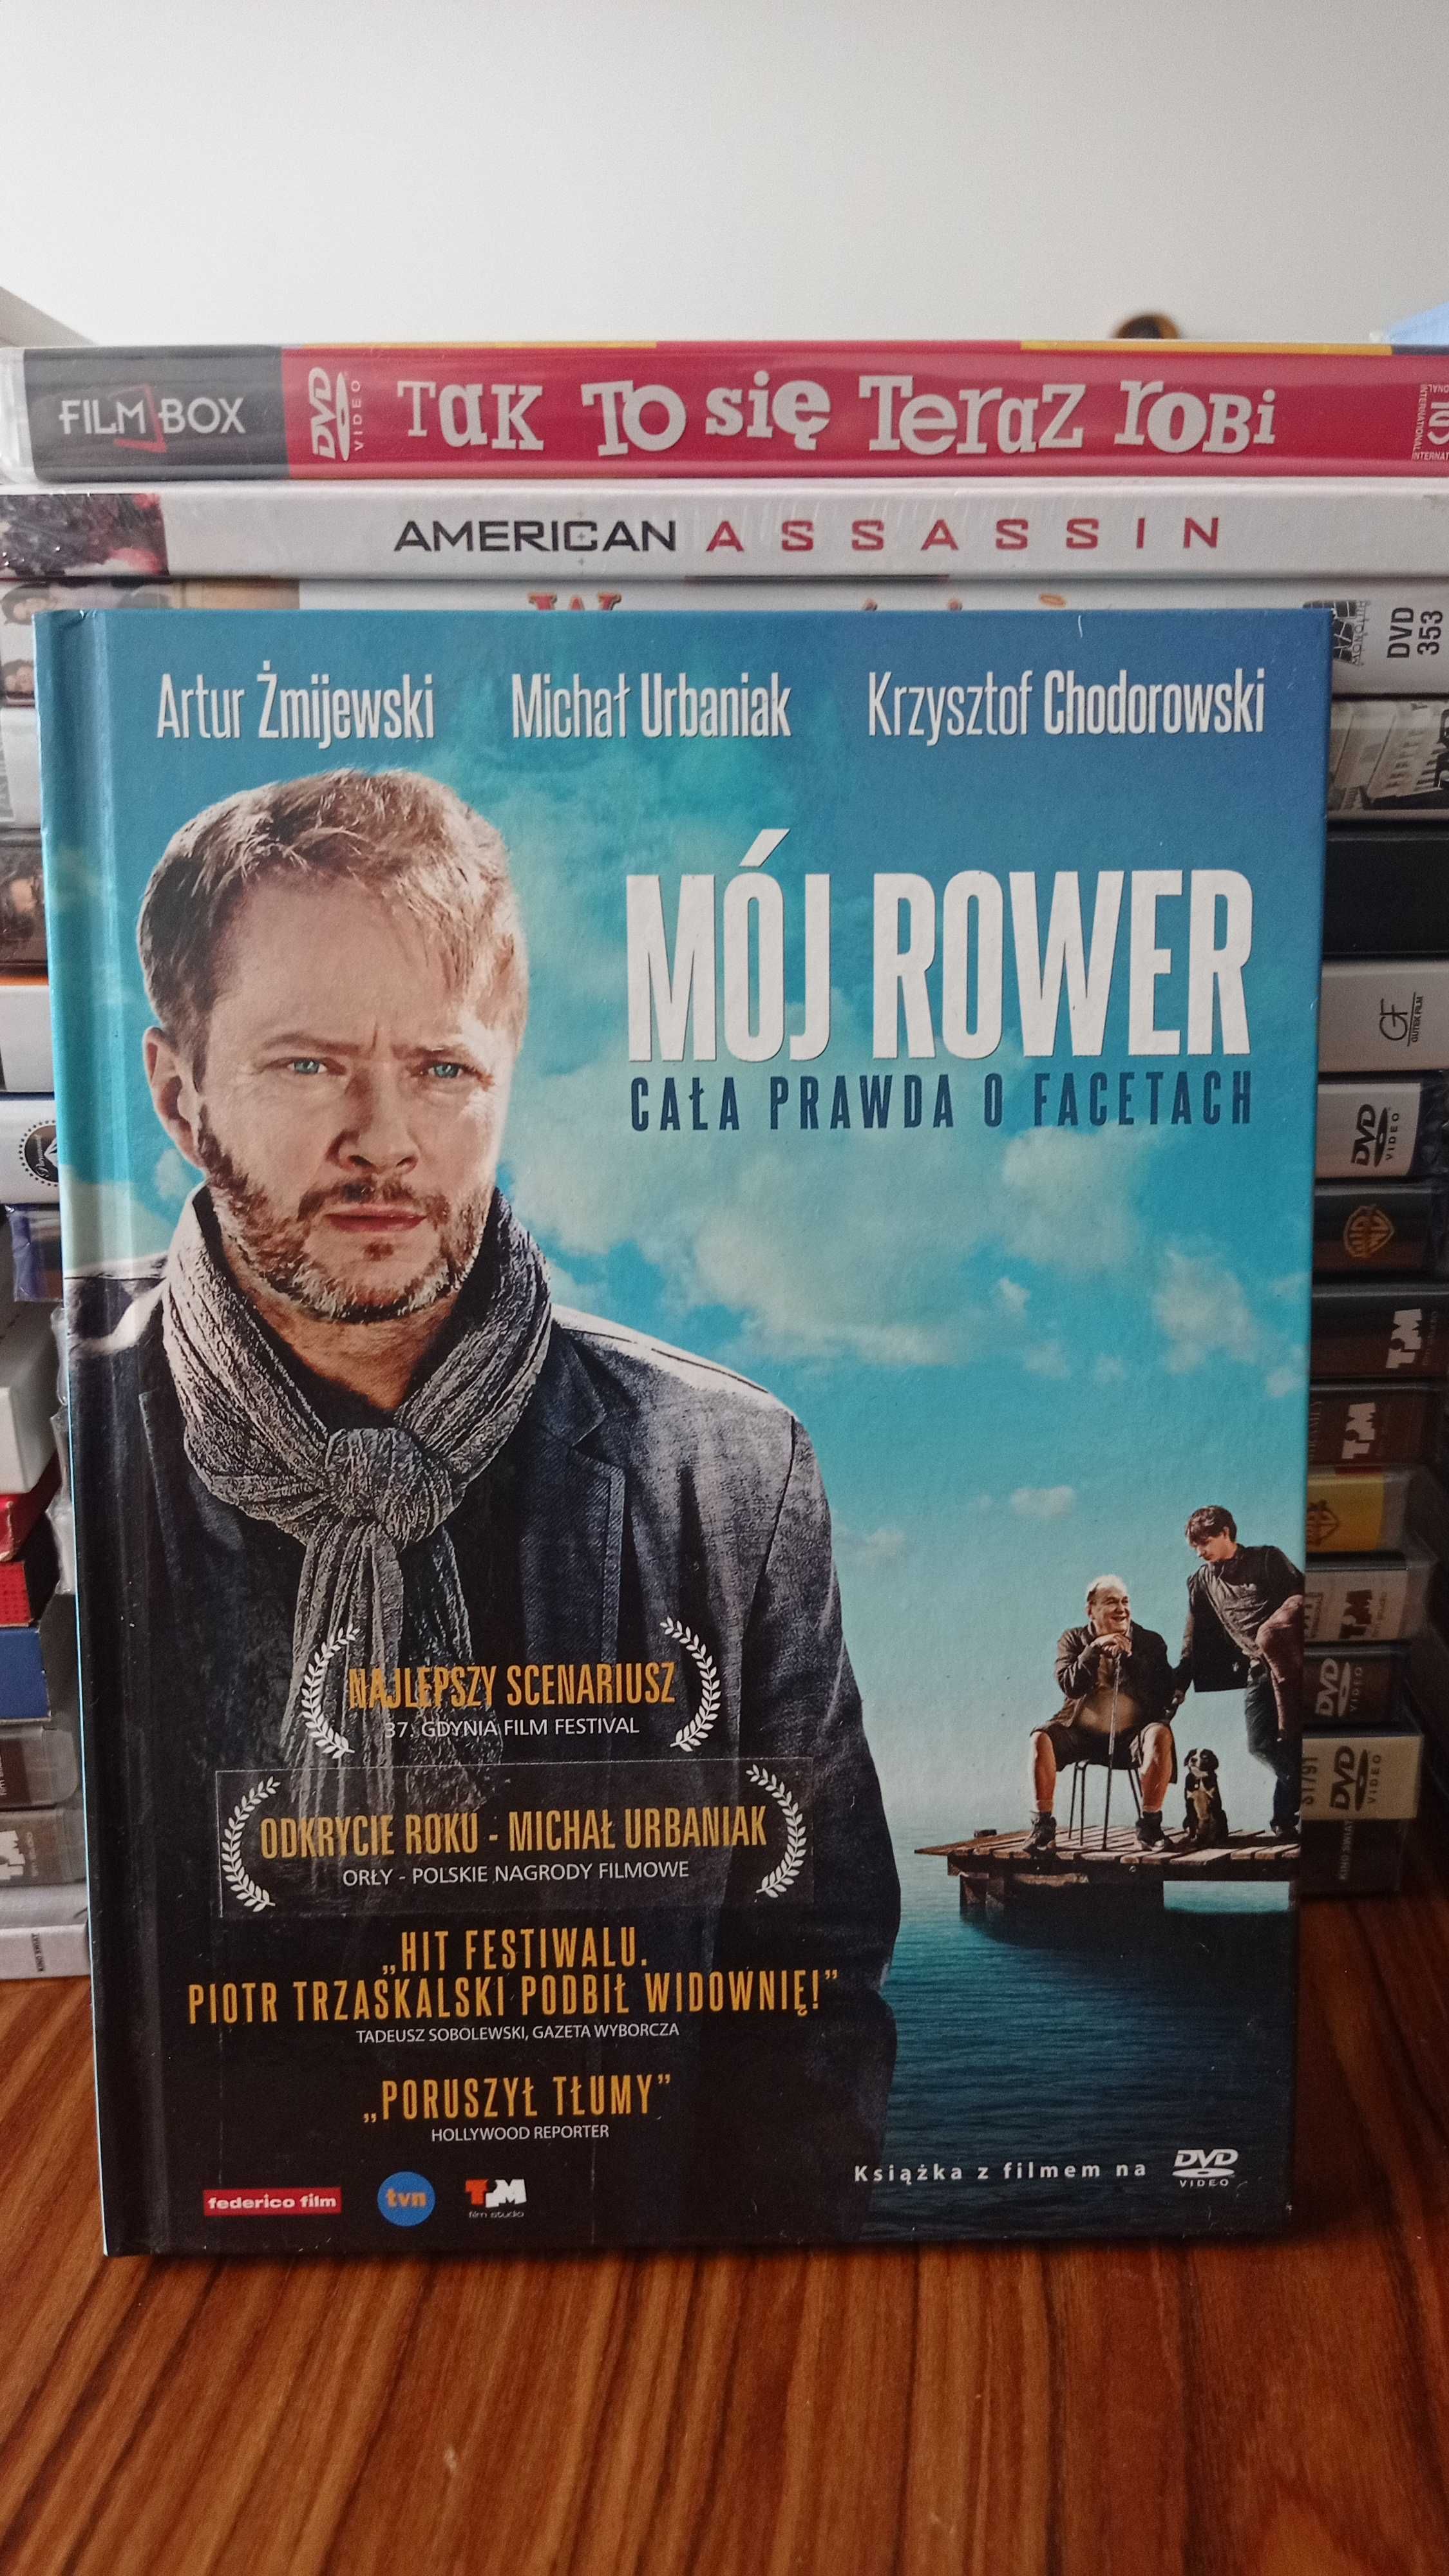 Film DVD MÓJ ROWER nowy oryginalne i oficjalne wydanie za 1/4 ceny